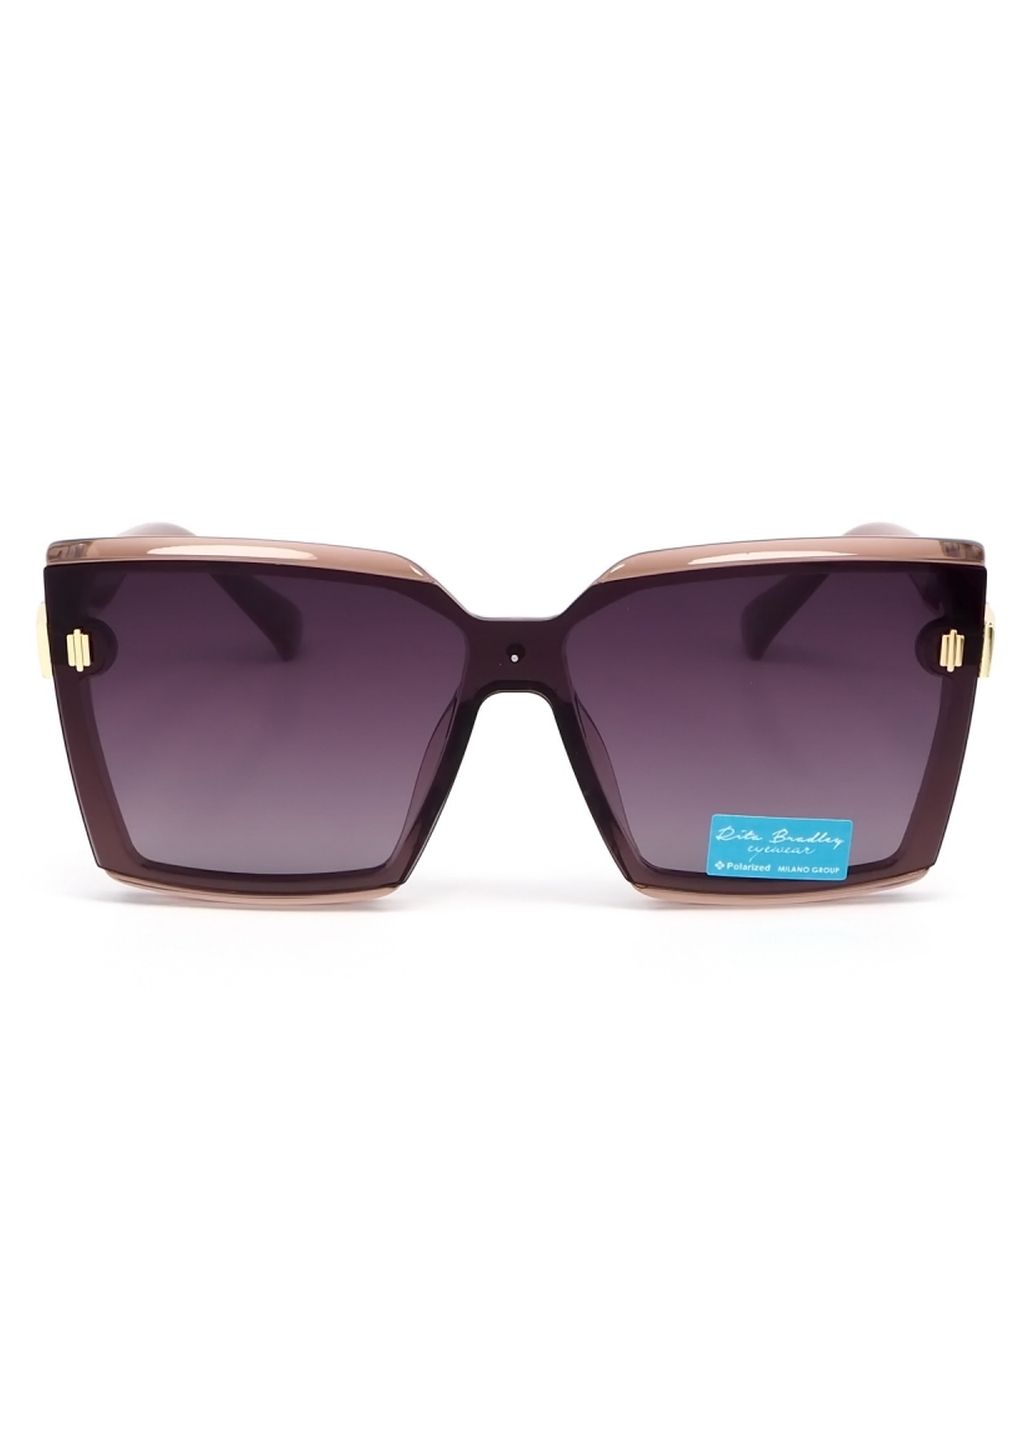 Купить Женские солнцезащитные очки Rita Bradley с поляризацией RB723 112040 в интернет-магазине